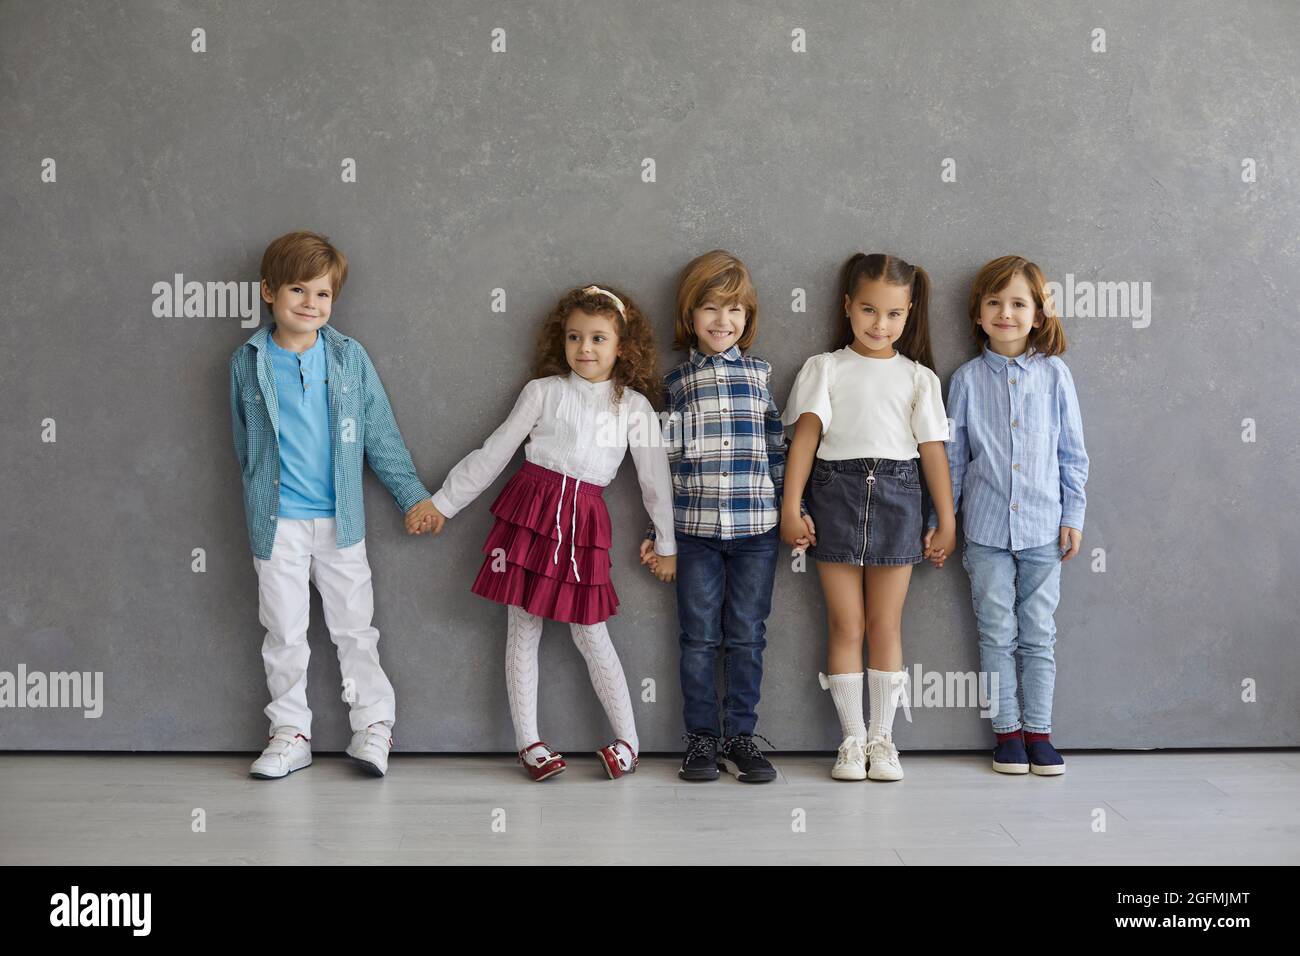 Retrato de niños y niñas pequeños, lindos y felices, con ropa informal de pie contra la pared gris. Foto de stock